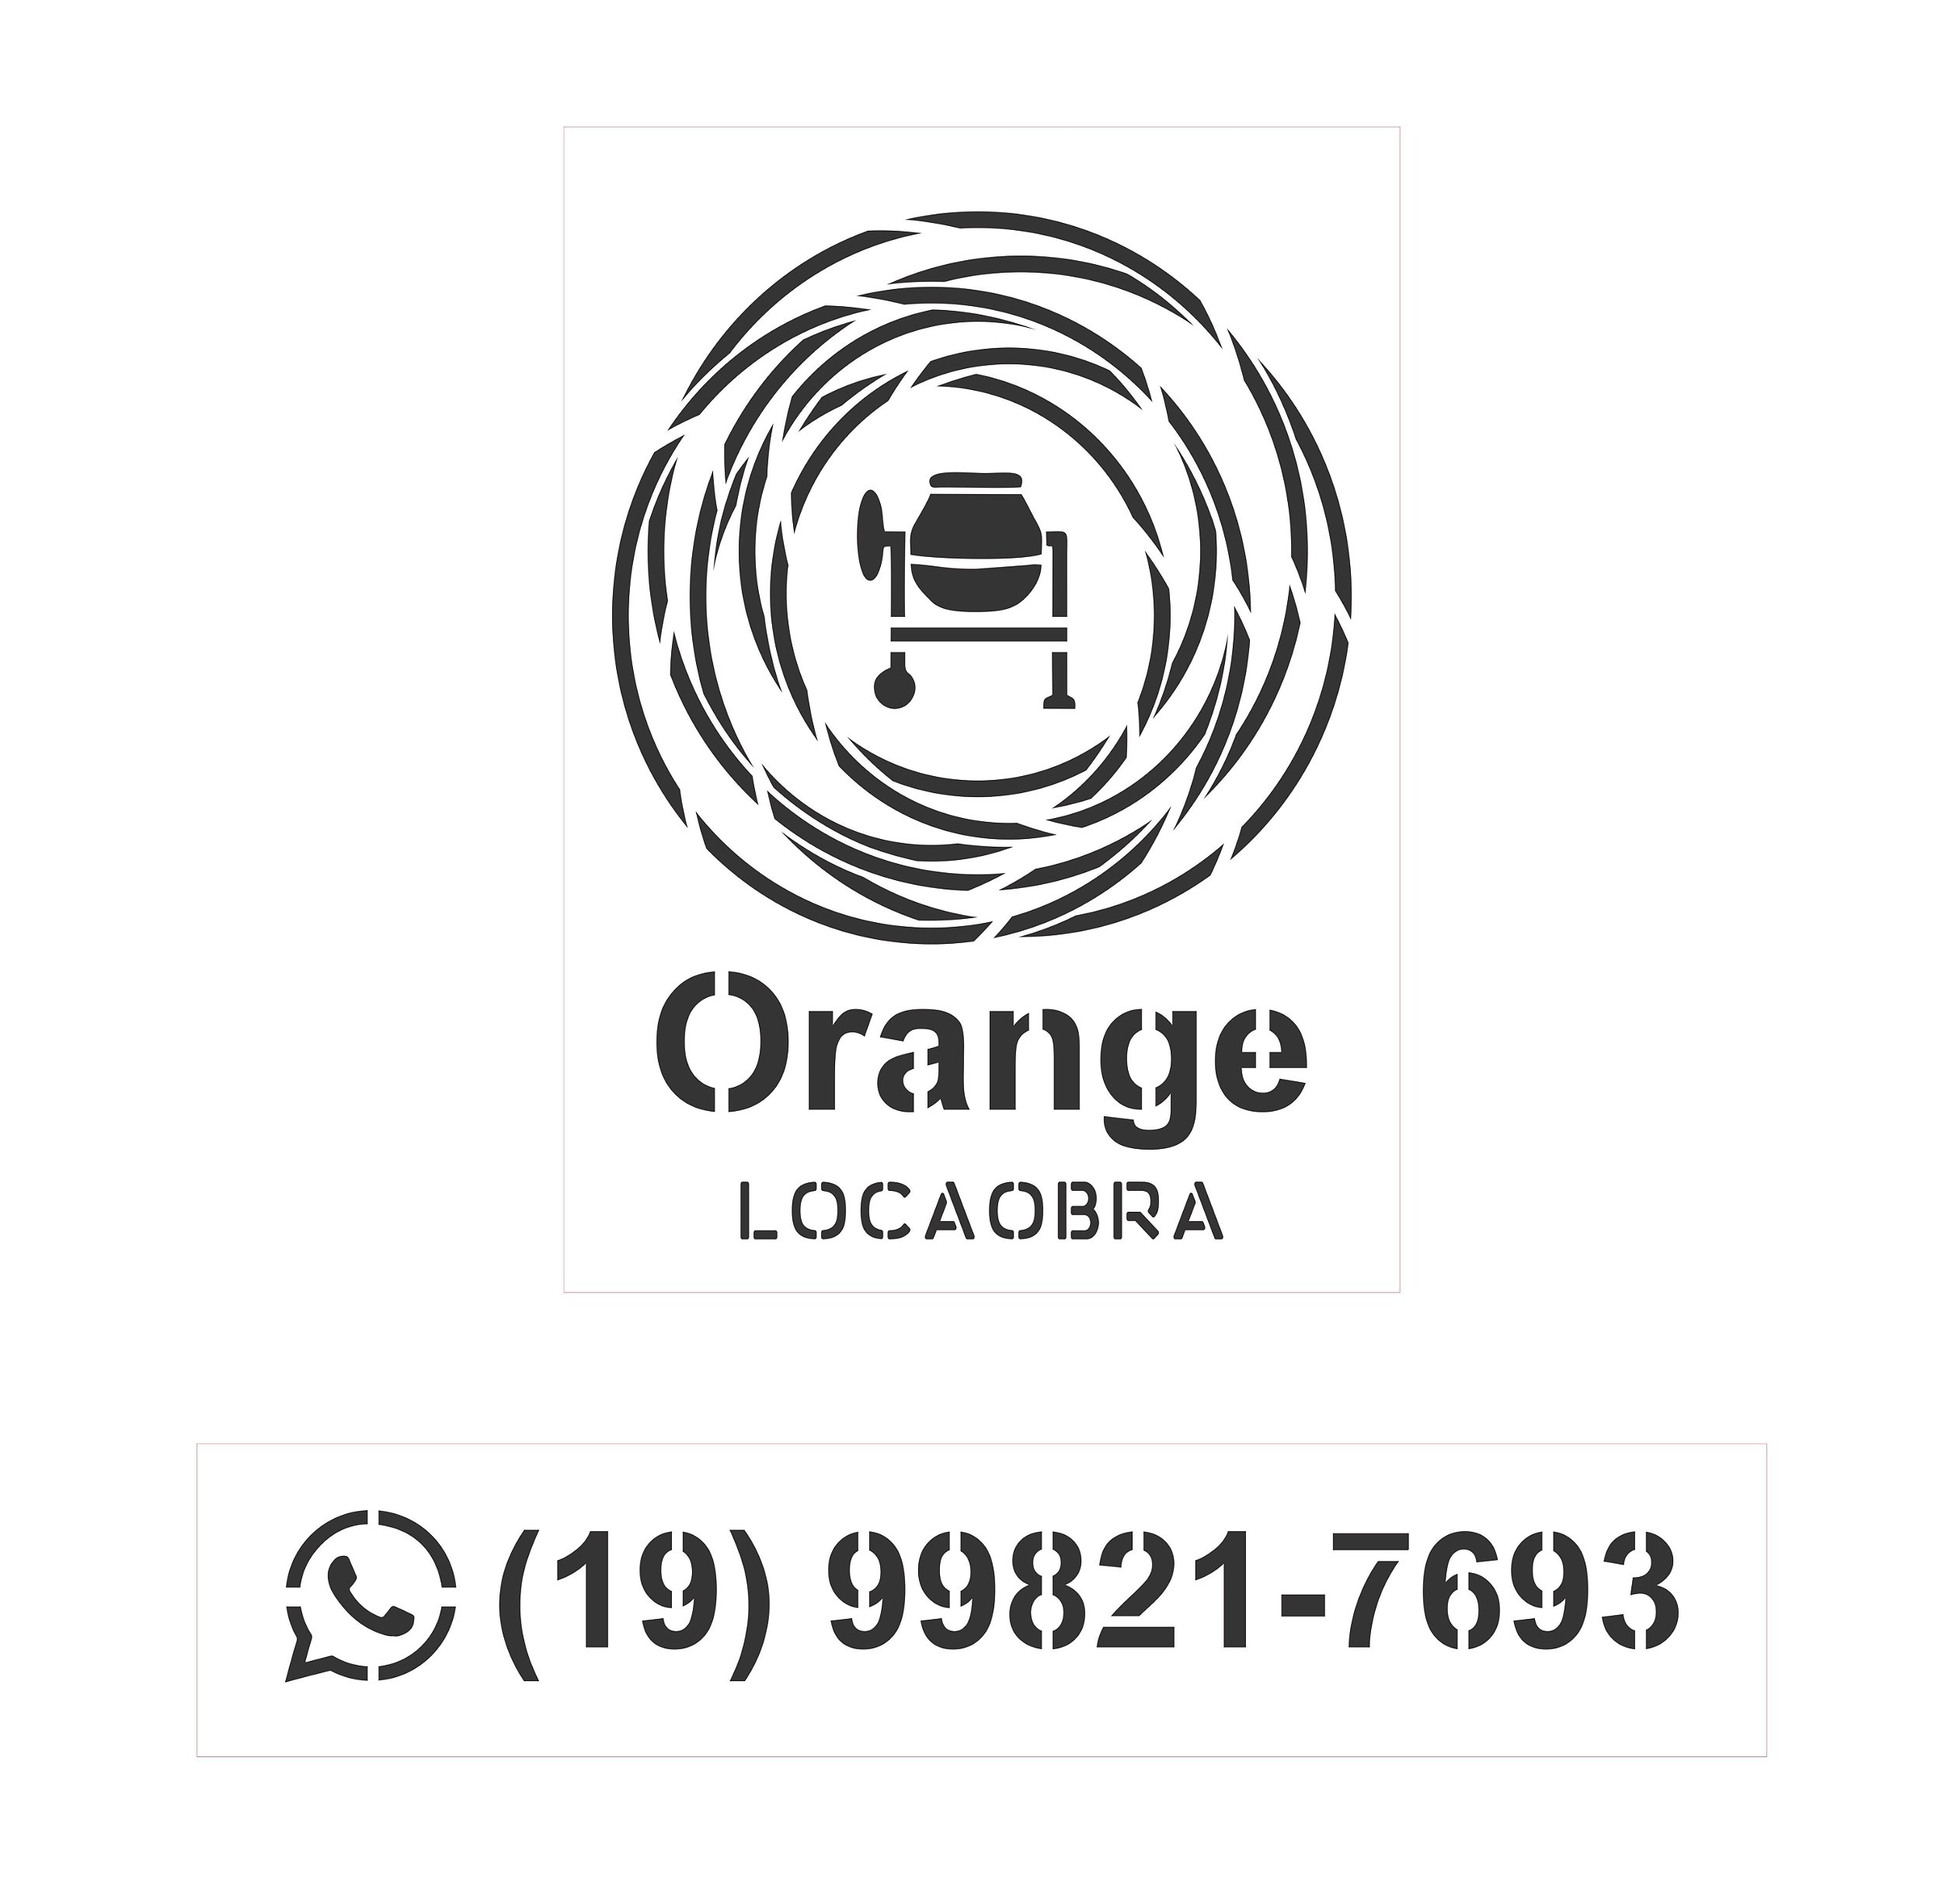 Kit de Stencil Personalizado Orange Locaobra + Numeros de 0 a 9 com 1 - Stencil  Personalizado gabarito e moldes para pintura